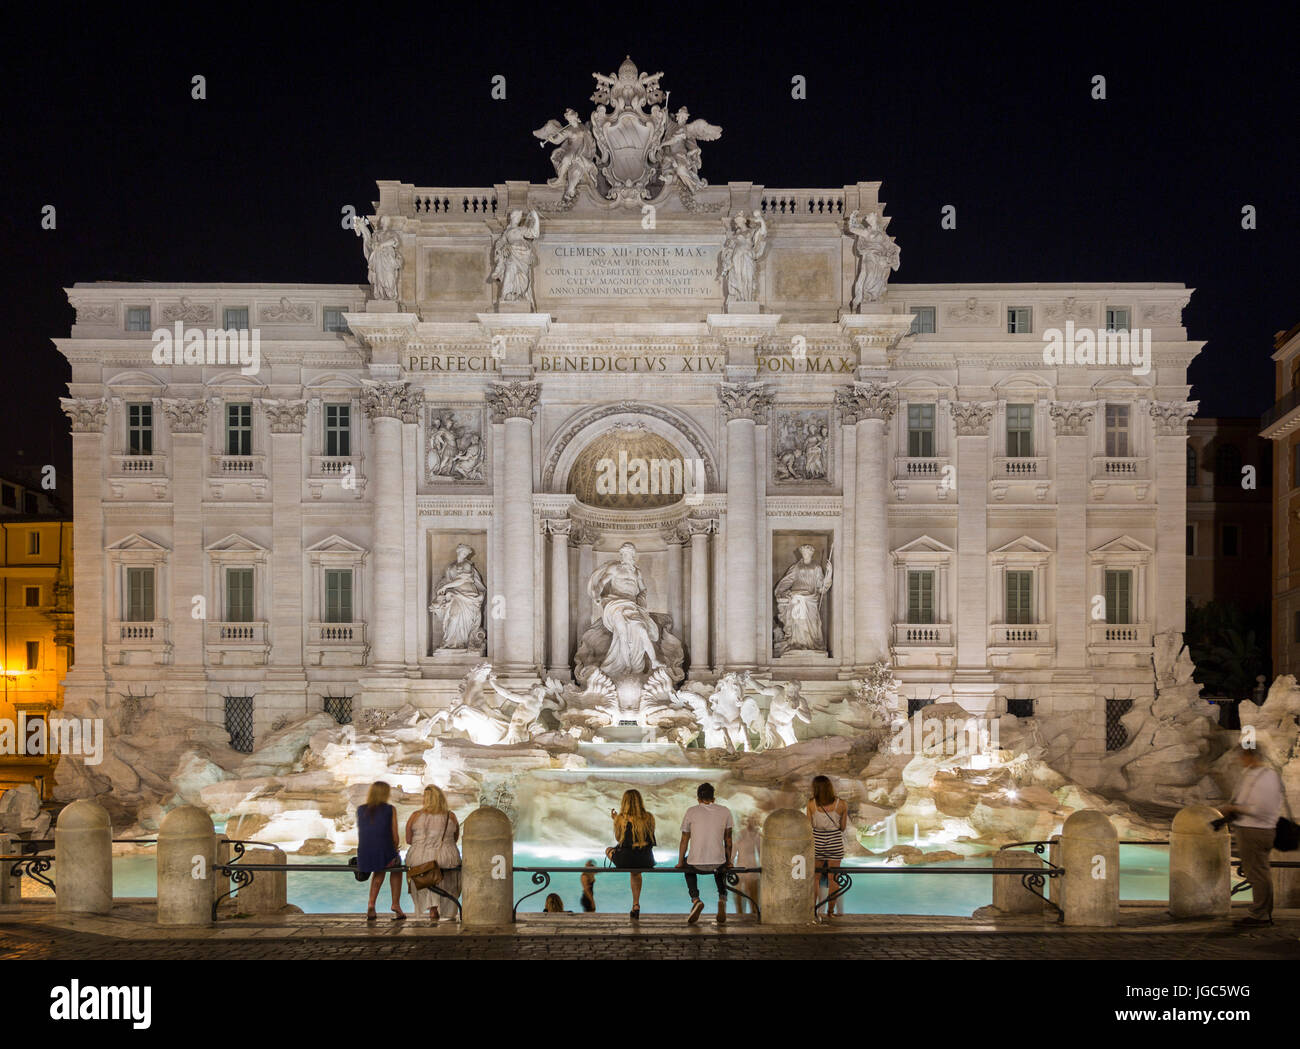 Trevi Fountain, Fontana di Trevi, Rome, Italy Stock Photo